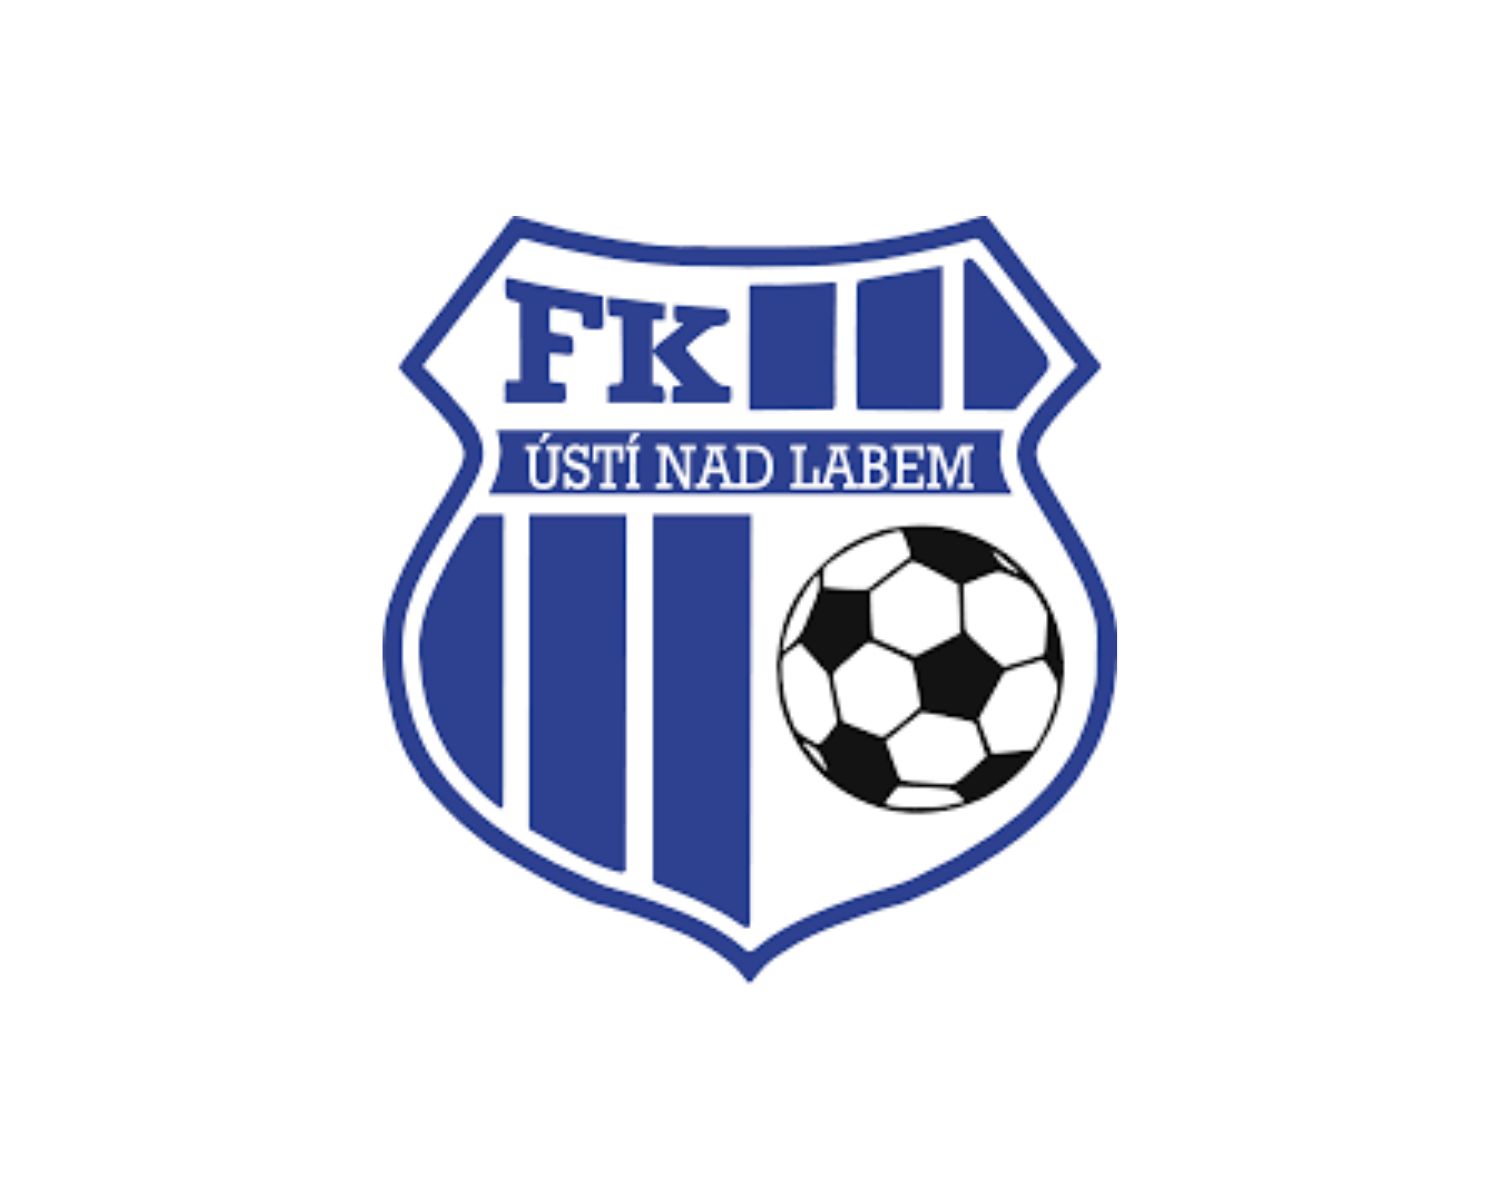 fk-usti-nad-labem-17-football-club-facts